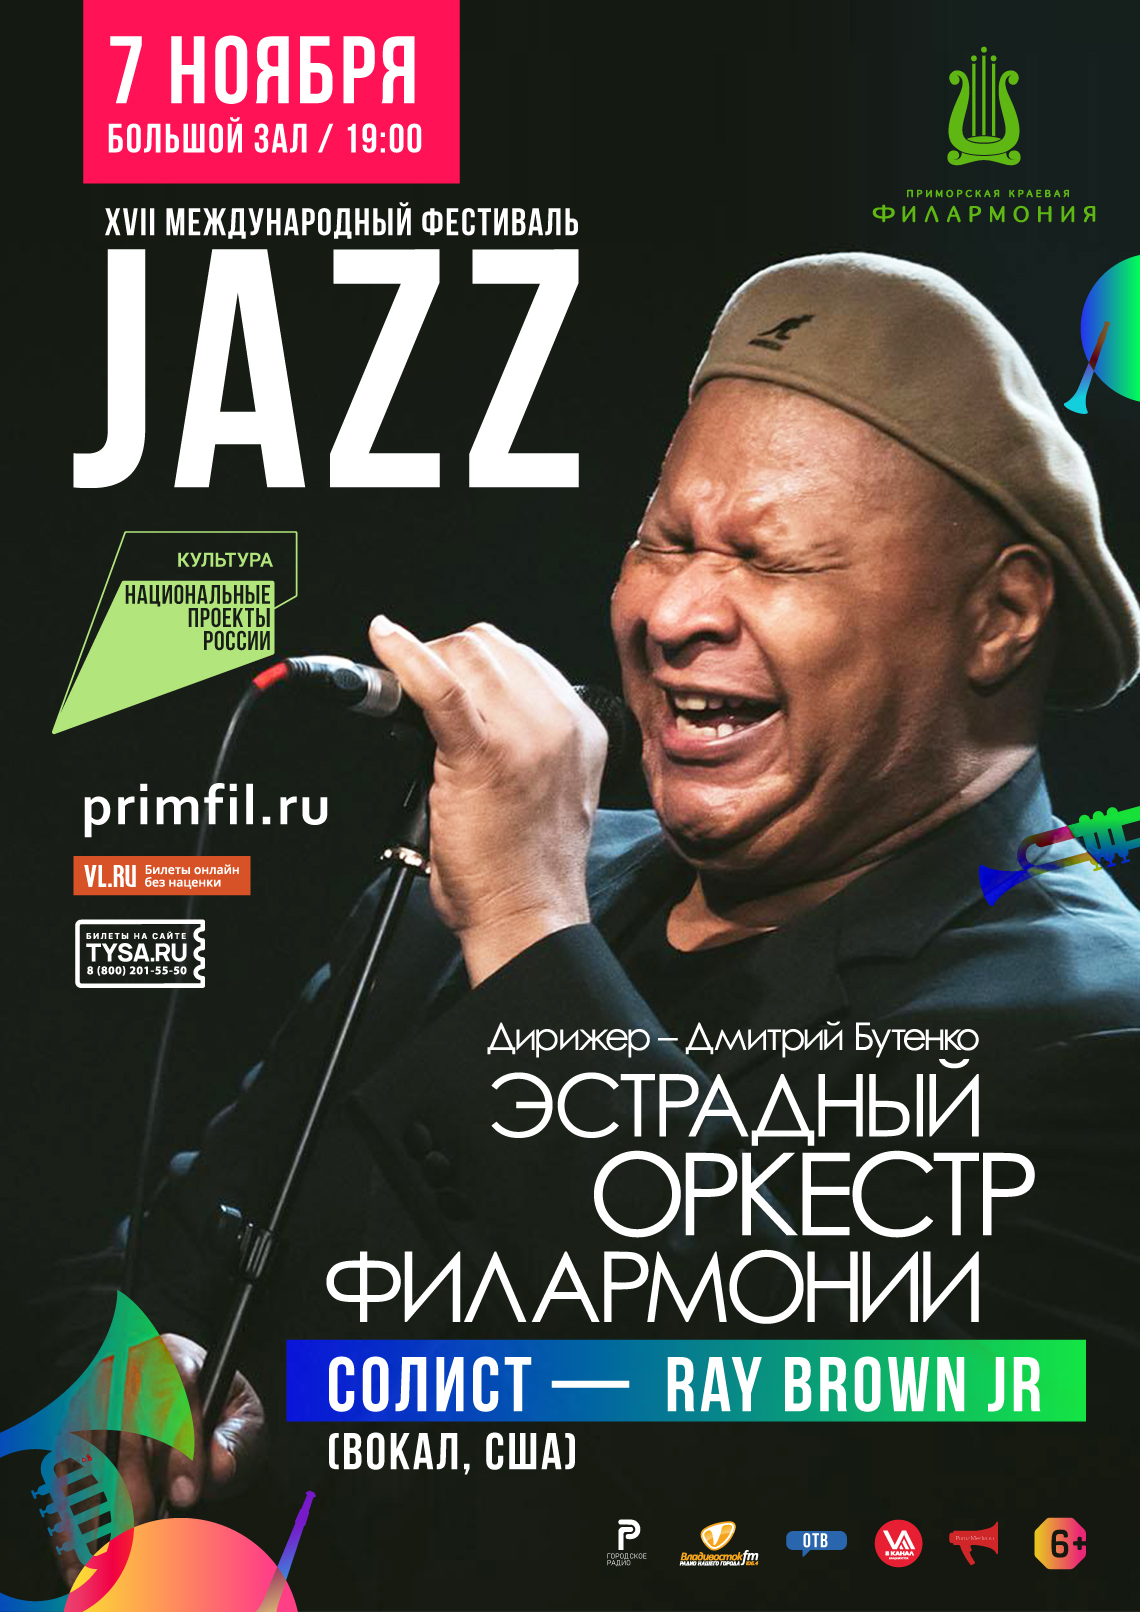 7 ноября Открытие  XVII Международного Джазового фестиваля Эстрадный оркестр Приморской филармонии